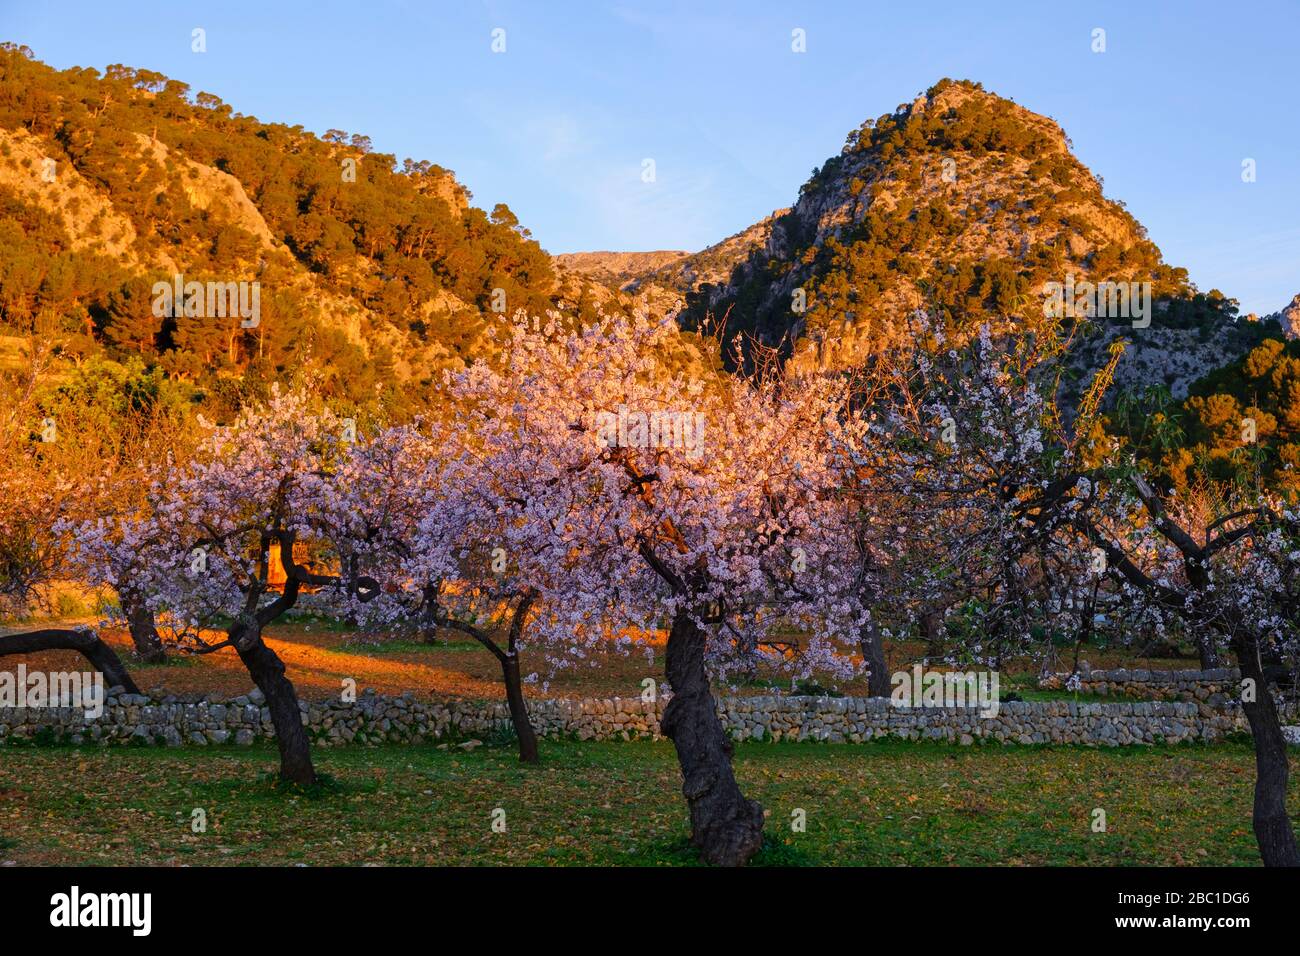 rosa blühende Mandelbäume bei Caimari im Morgenlicht, Serra de Tramuntana, Mallorca, Balearen, Spanien Foto Stock